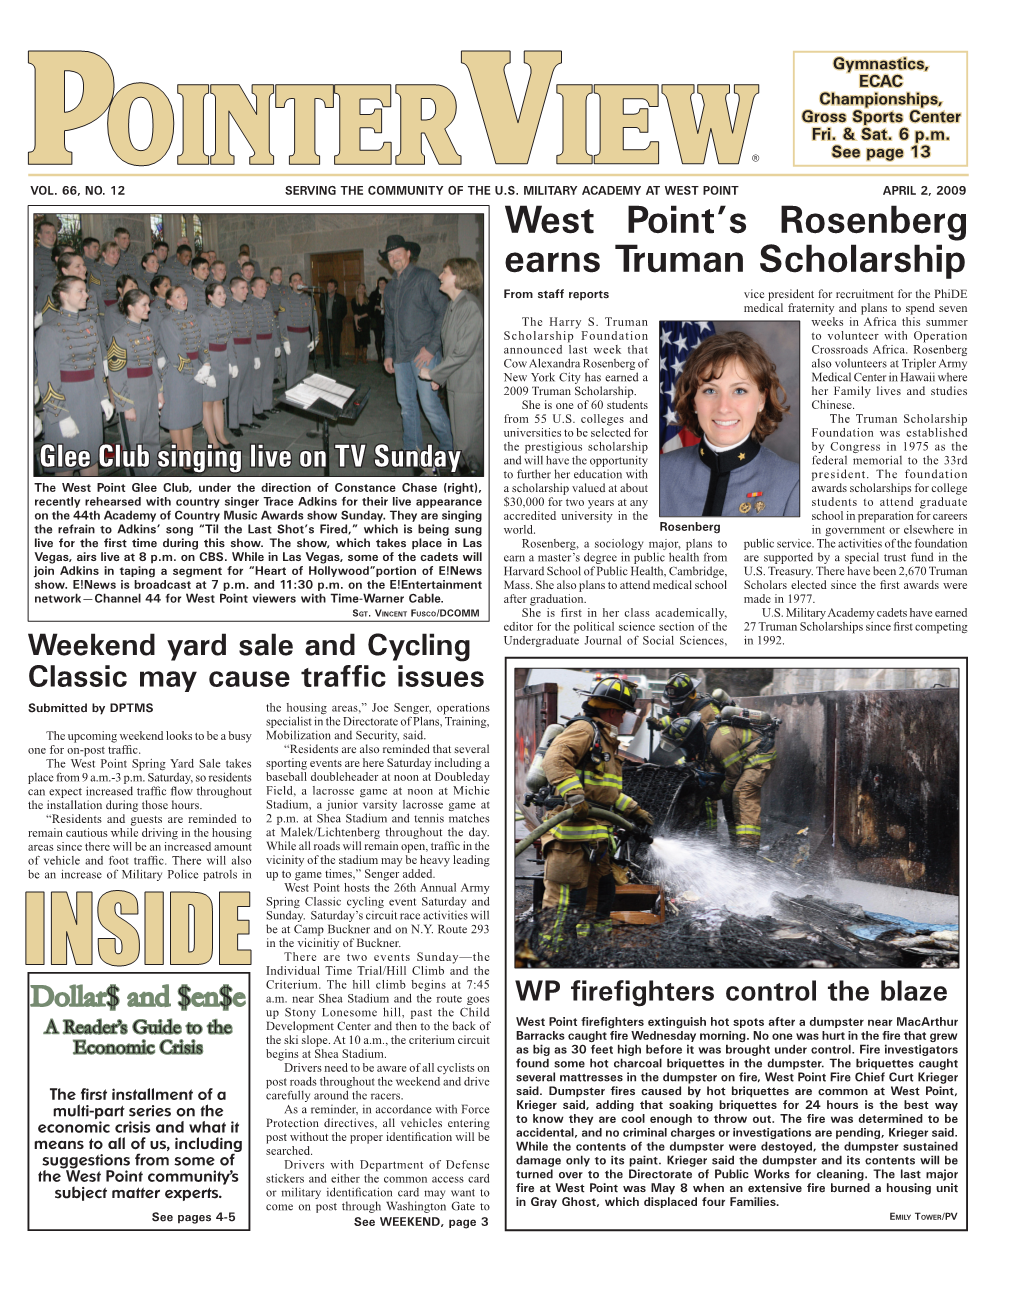 West Point's Rosenberg Earns Truman Scholarship